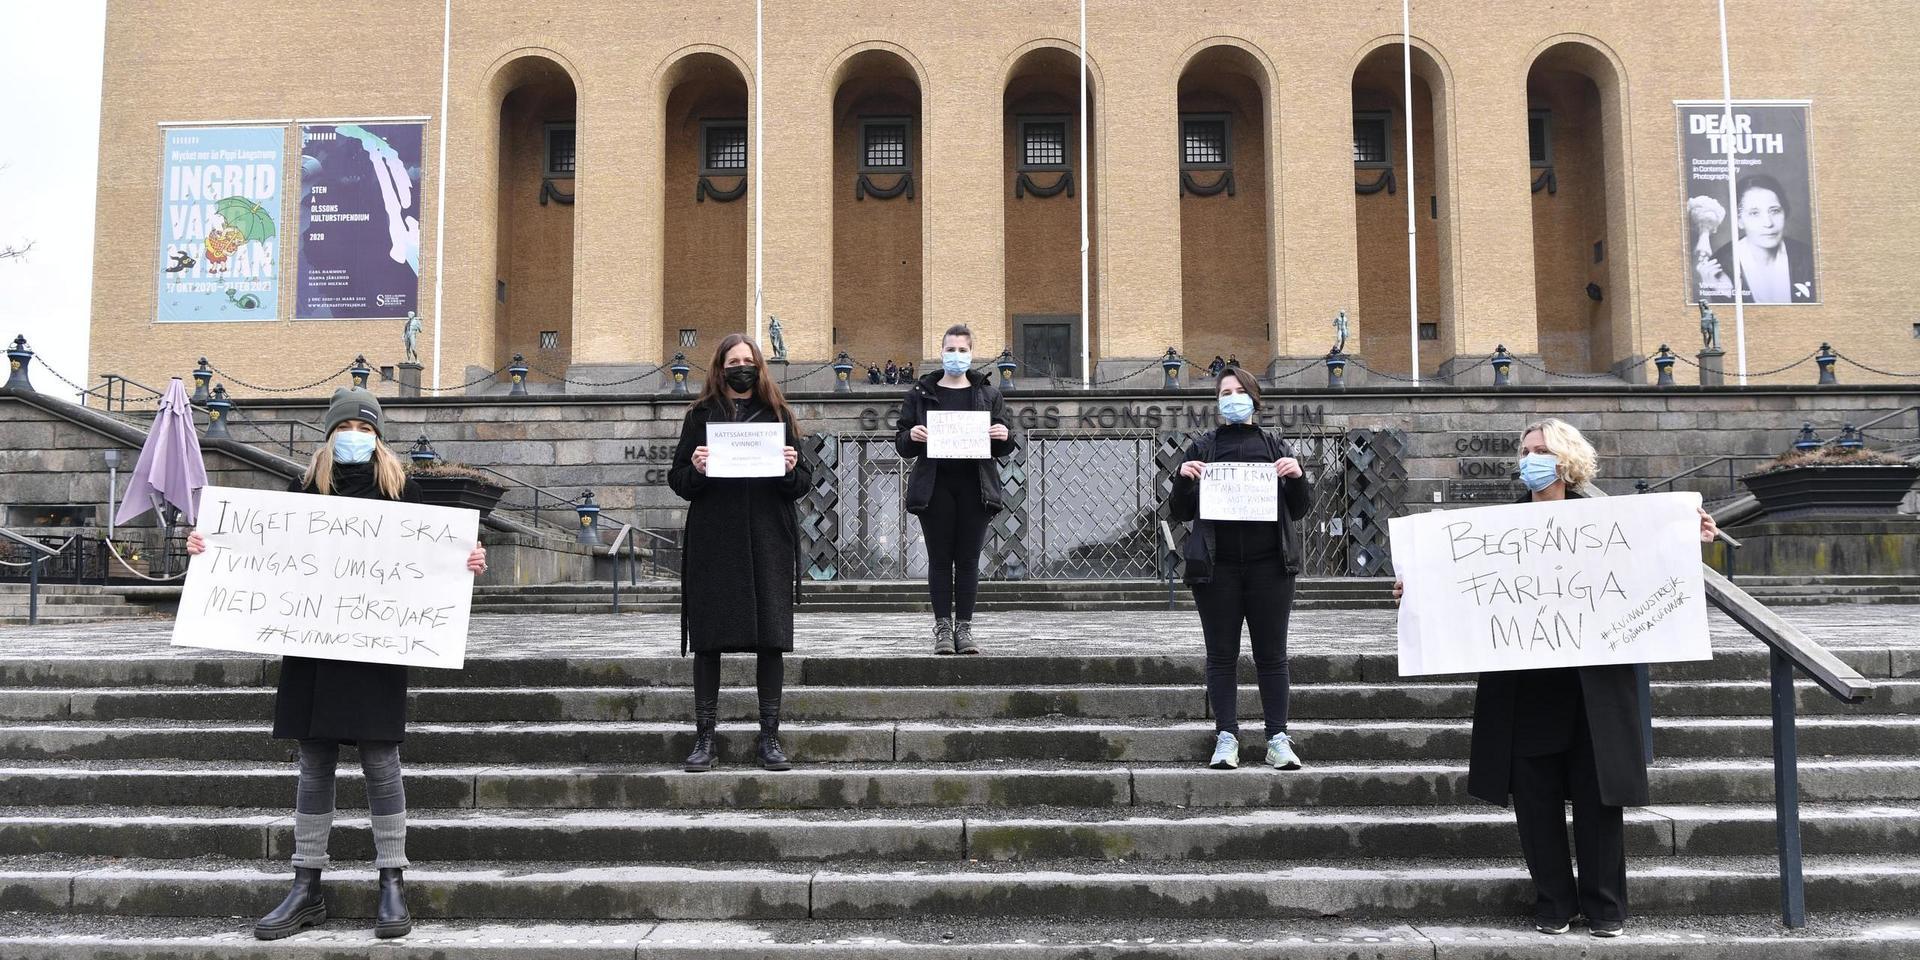 Hanna Lans, Jenny Åkesson, Karin O, Christina A, Mirella A antog uppmaningen om kvinnostrejk och tog sig till Götaplatsen på fredagseftermiddagen kl.15.00.